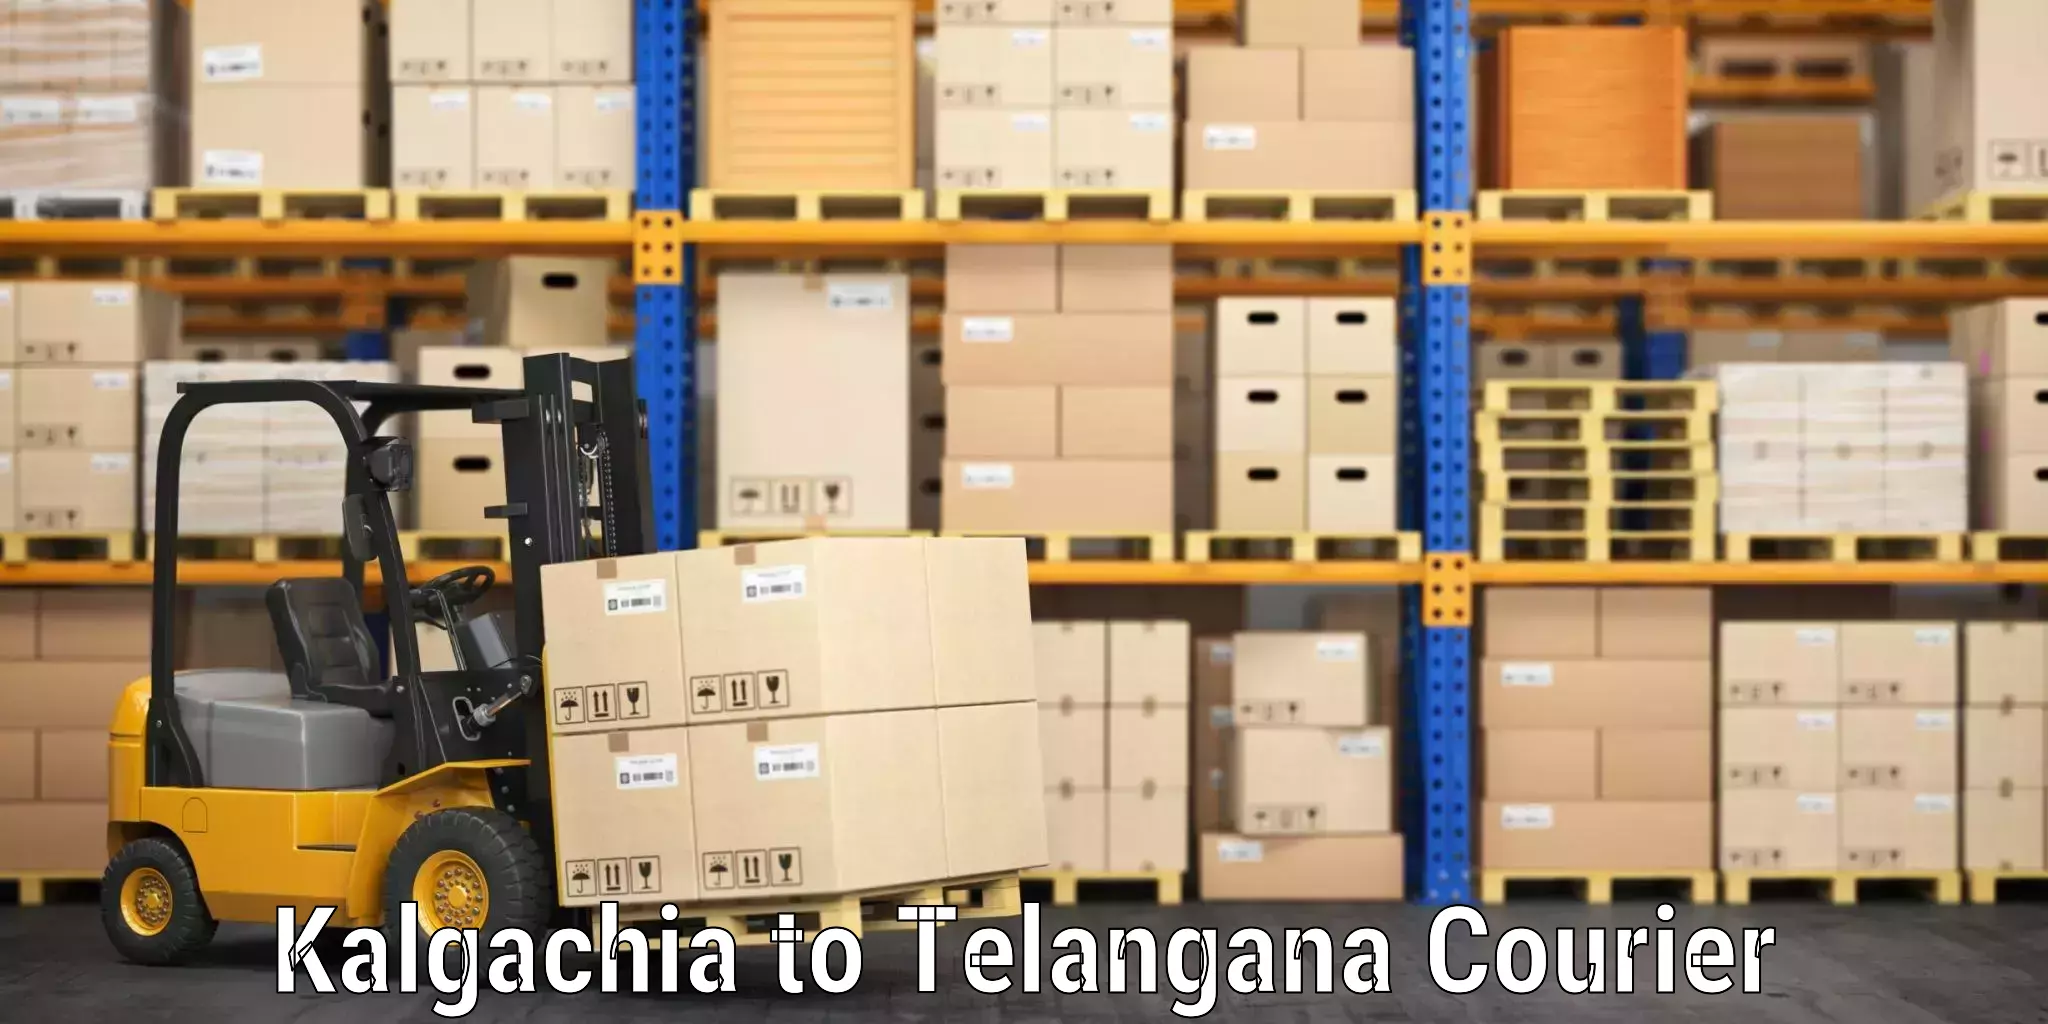 Luggage delivery app Kalgachia to Ghatkesar